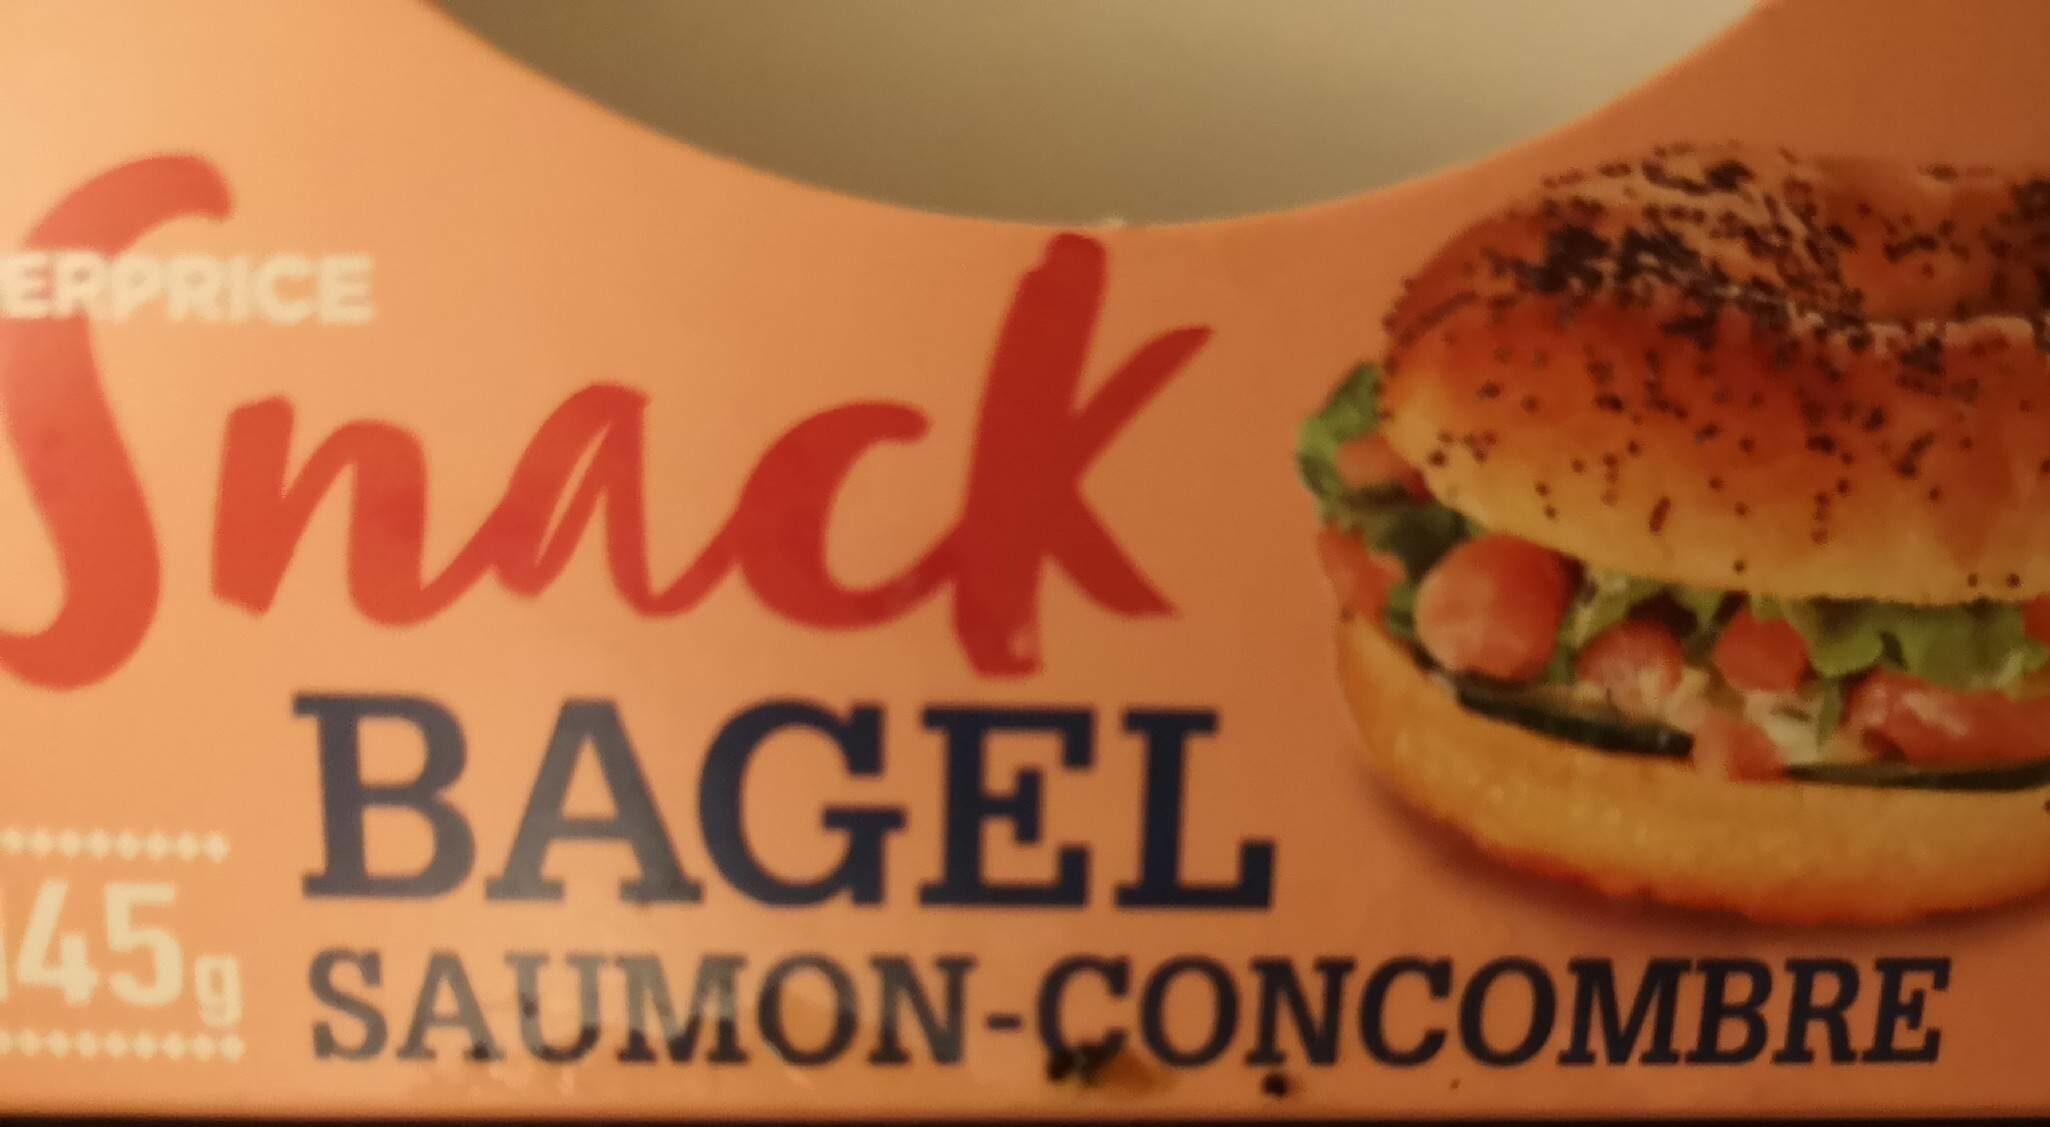 Bagel saumon-concombre - Product - fr